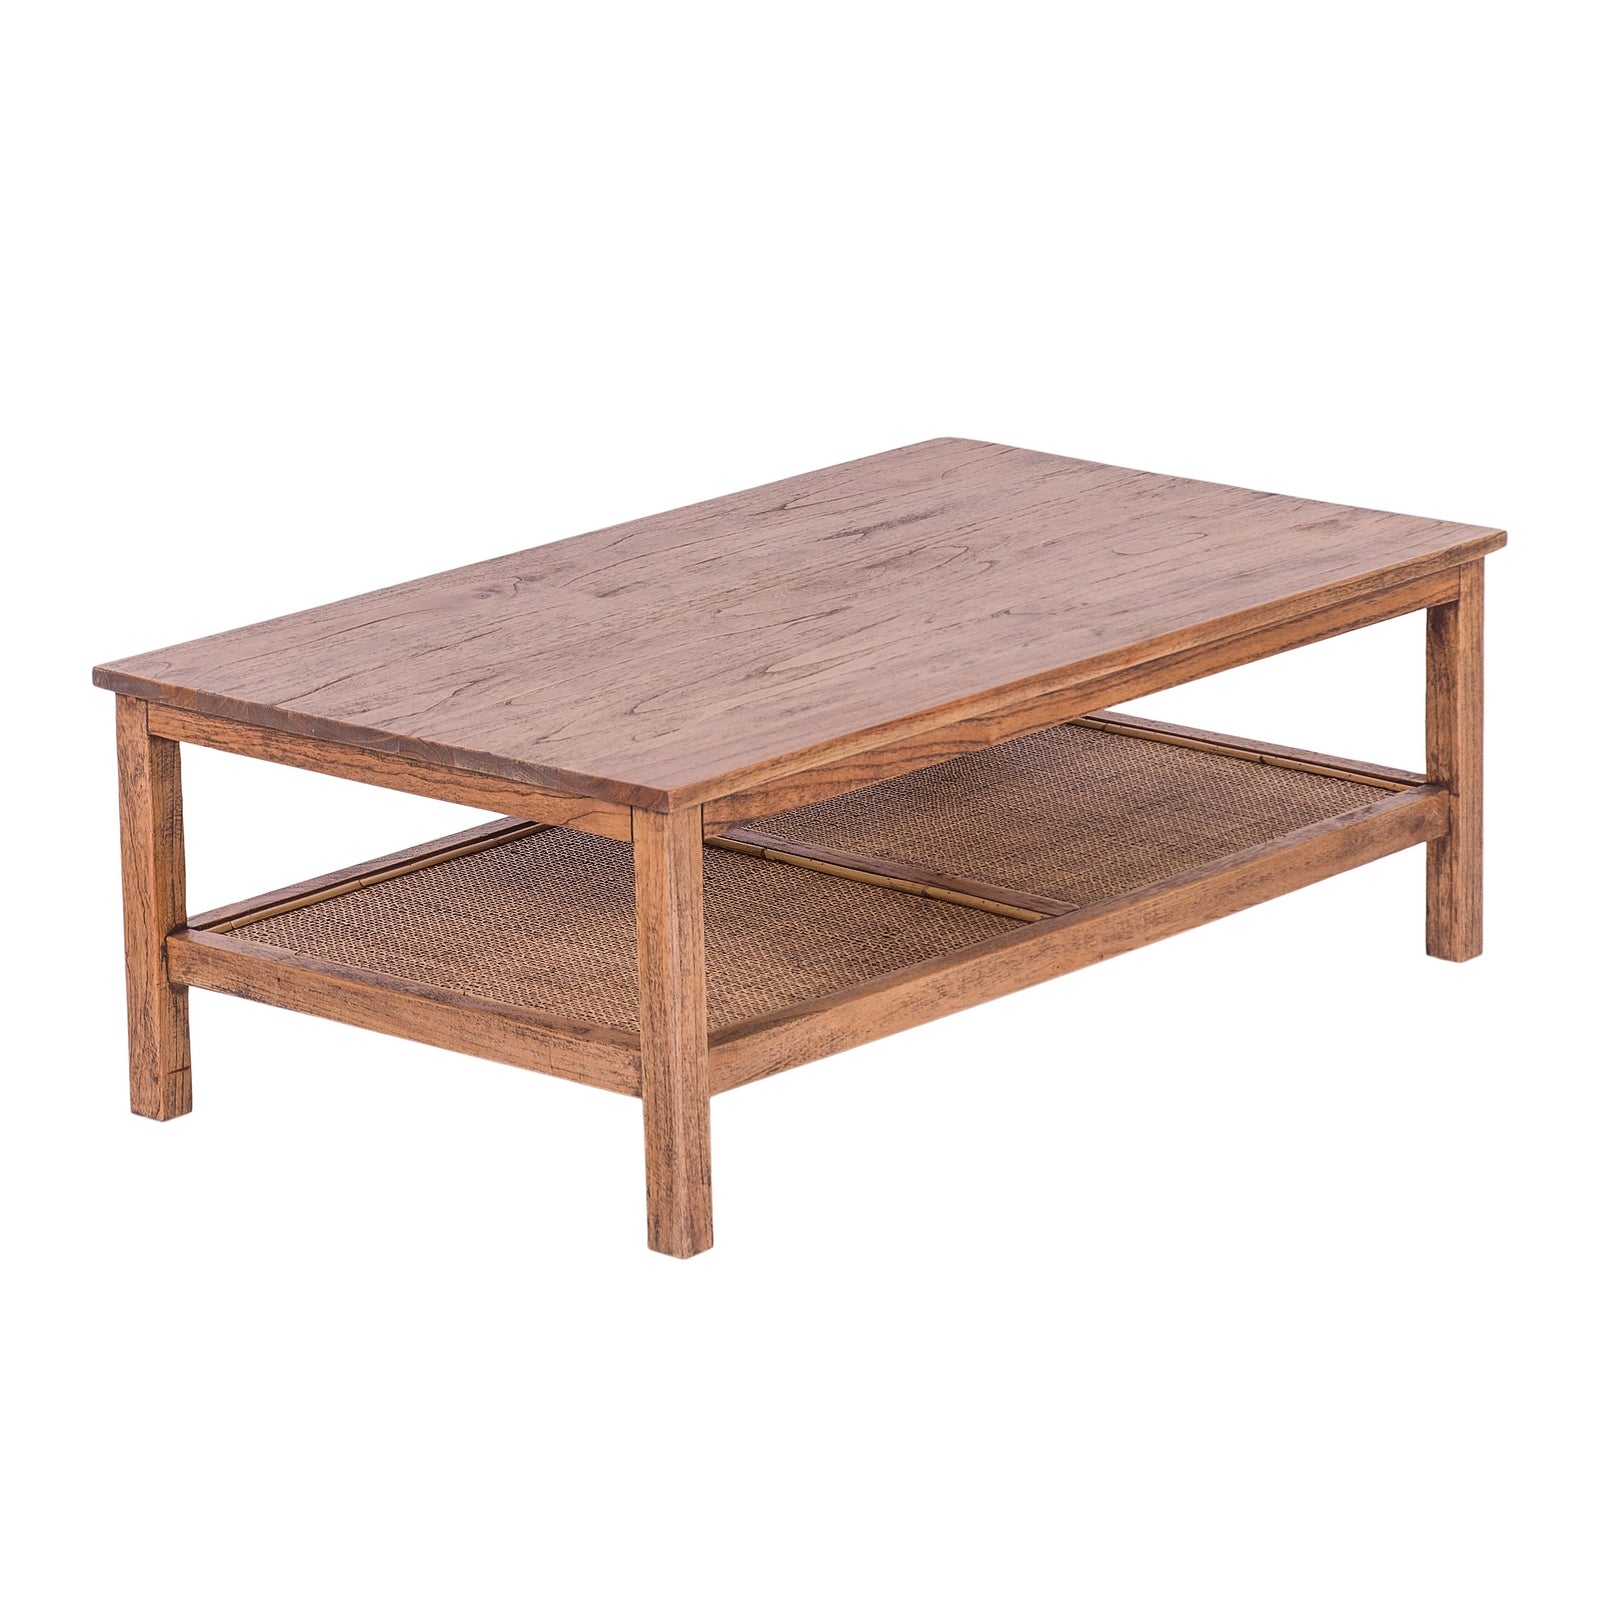 Coffee Table 110cm Mindi Timber Wood Rattan Weave - Brown